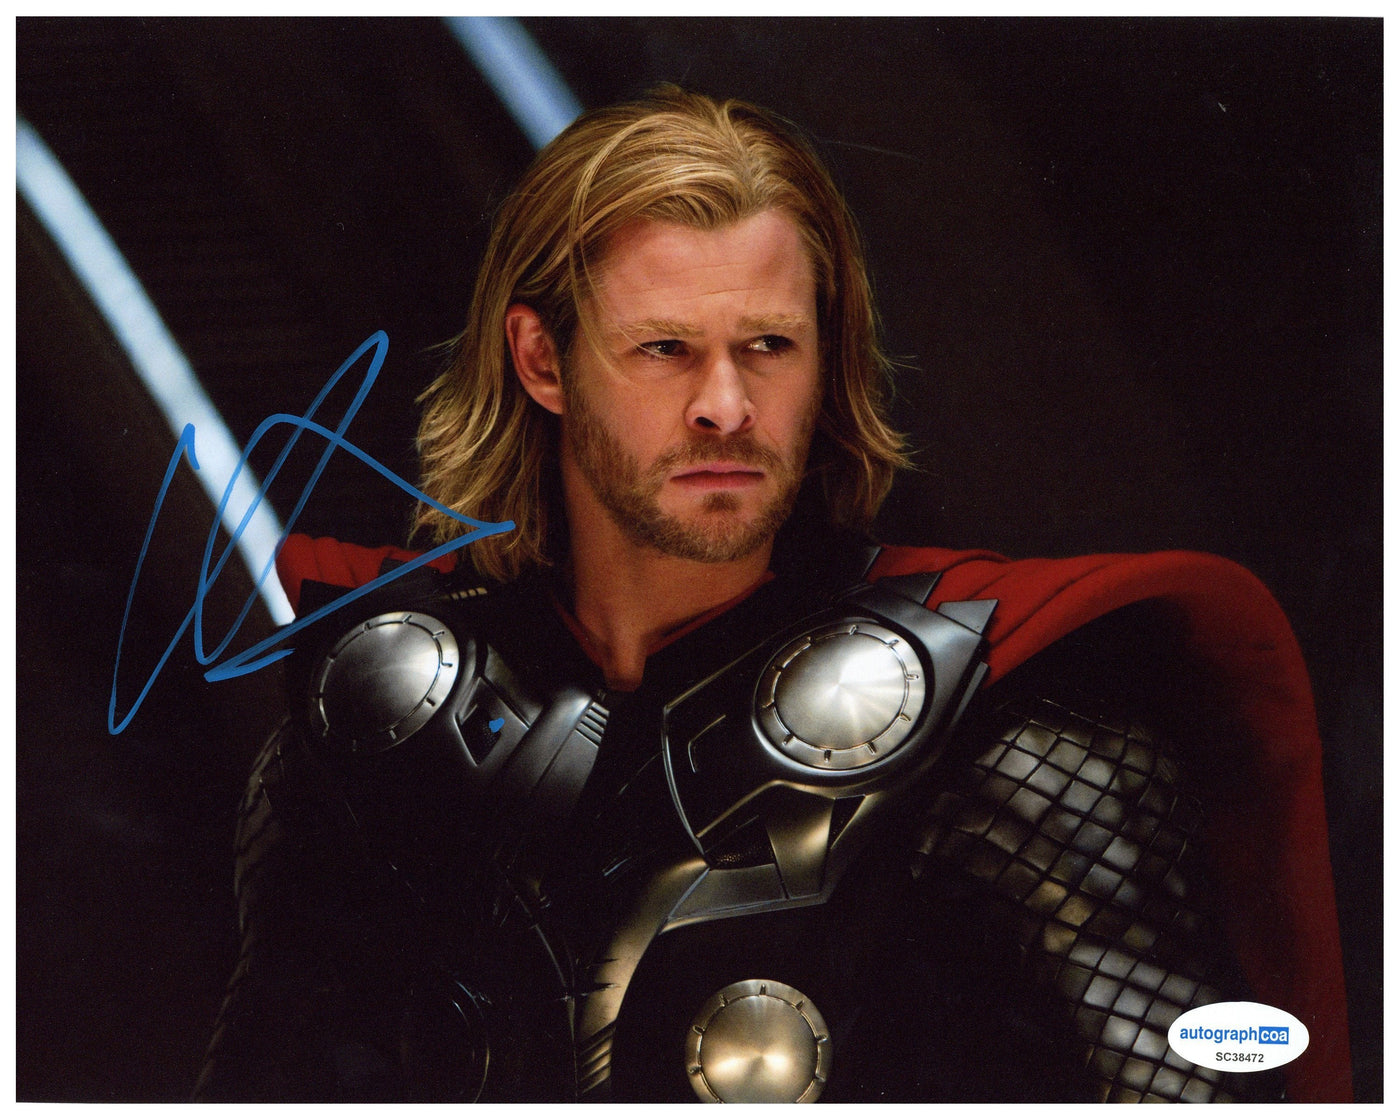 Chris Hemsworth Signed 8x10 Photo Marvel Thor Autographed ACOA COA #2